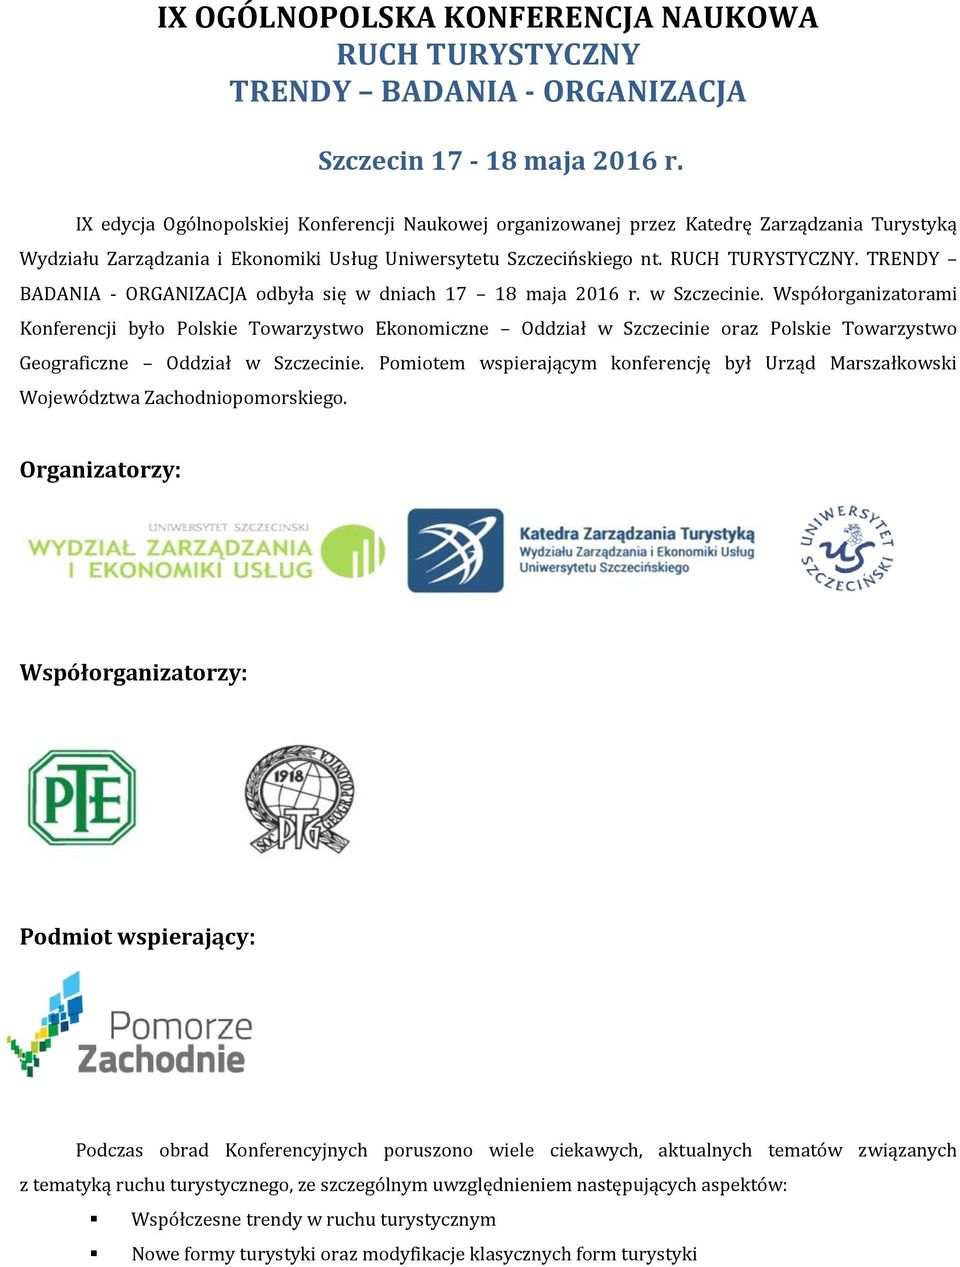 TRENDY BADANIA - ORGANIZACJA odbyła się w dniach 17 18 maja 2016 r. w Szczecinie.